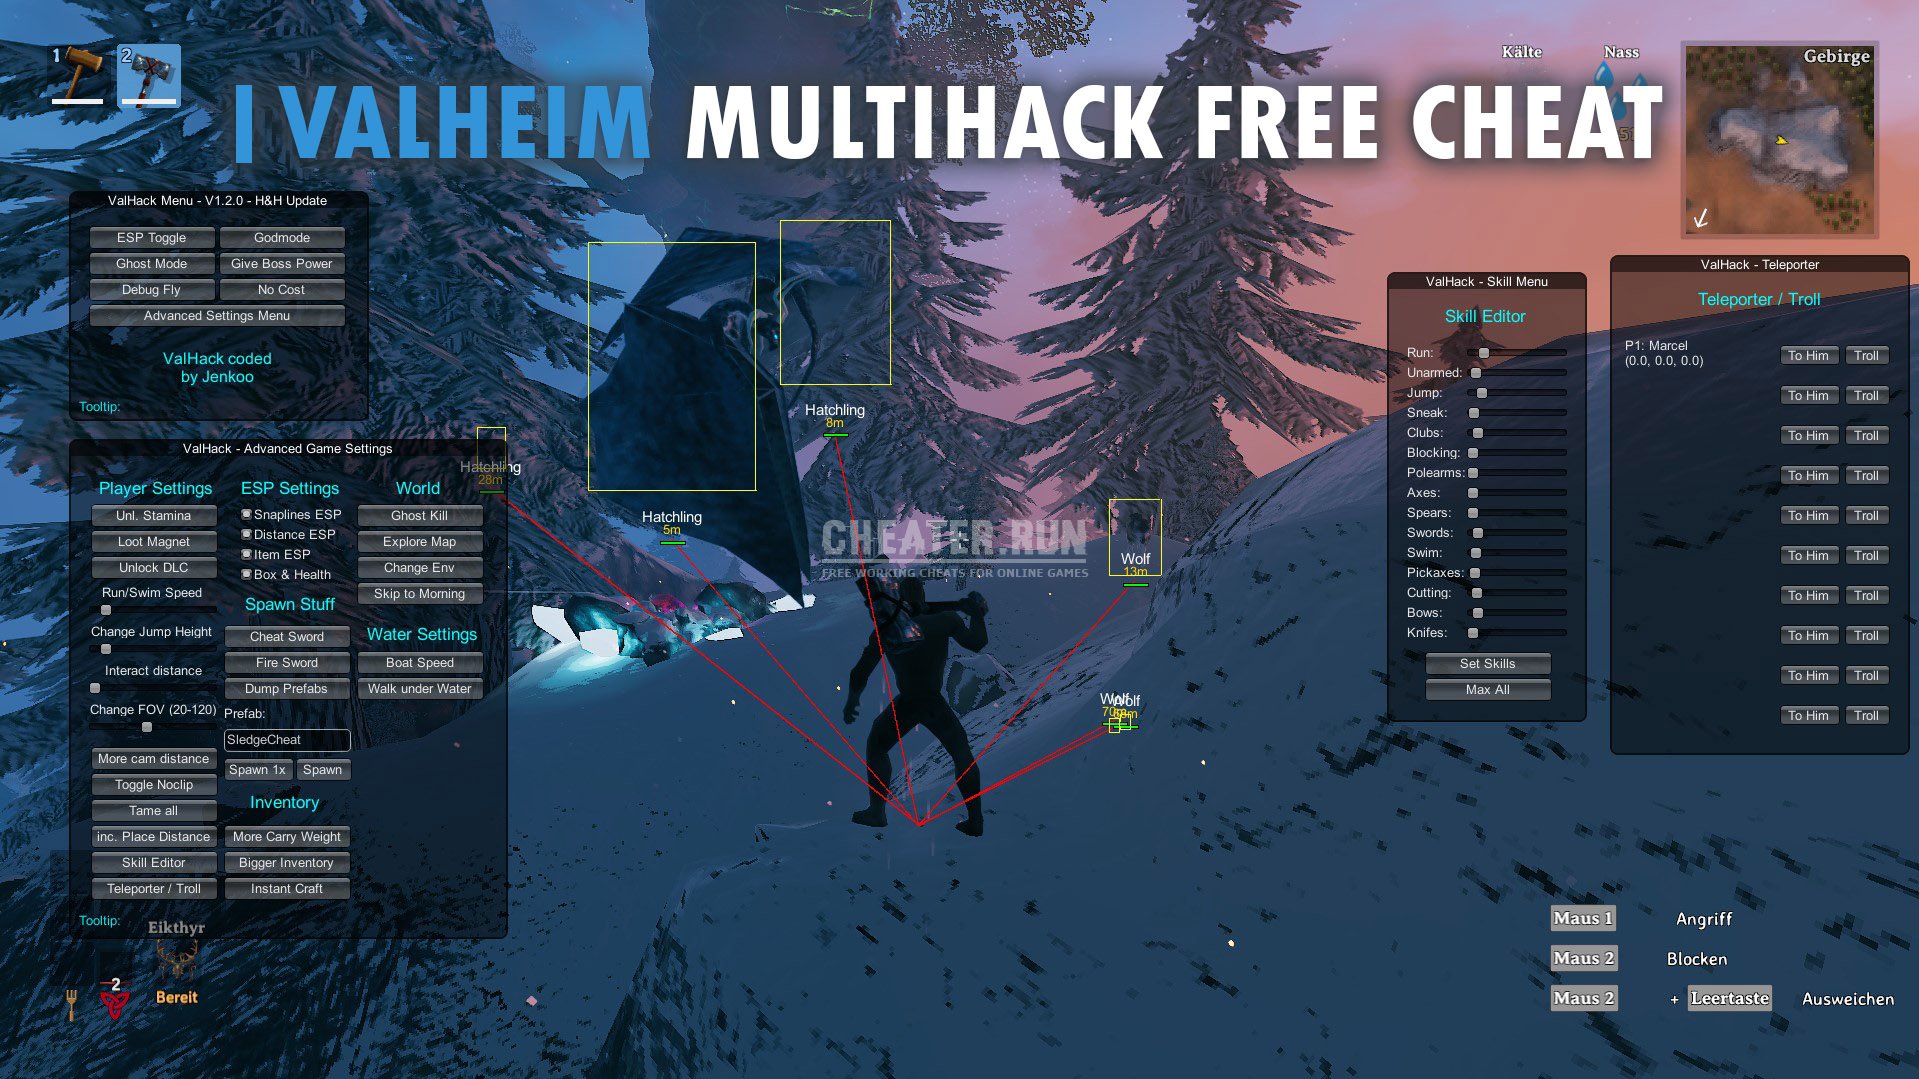 Valheim Multihack Free Cheat | Godmode-Noclip-Inventory-ESP-Spawn | ValHack